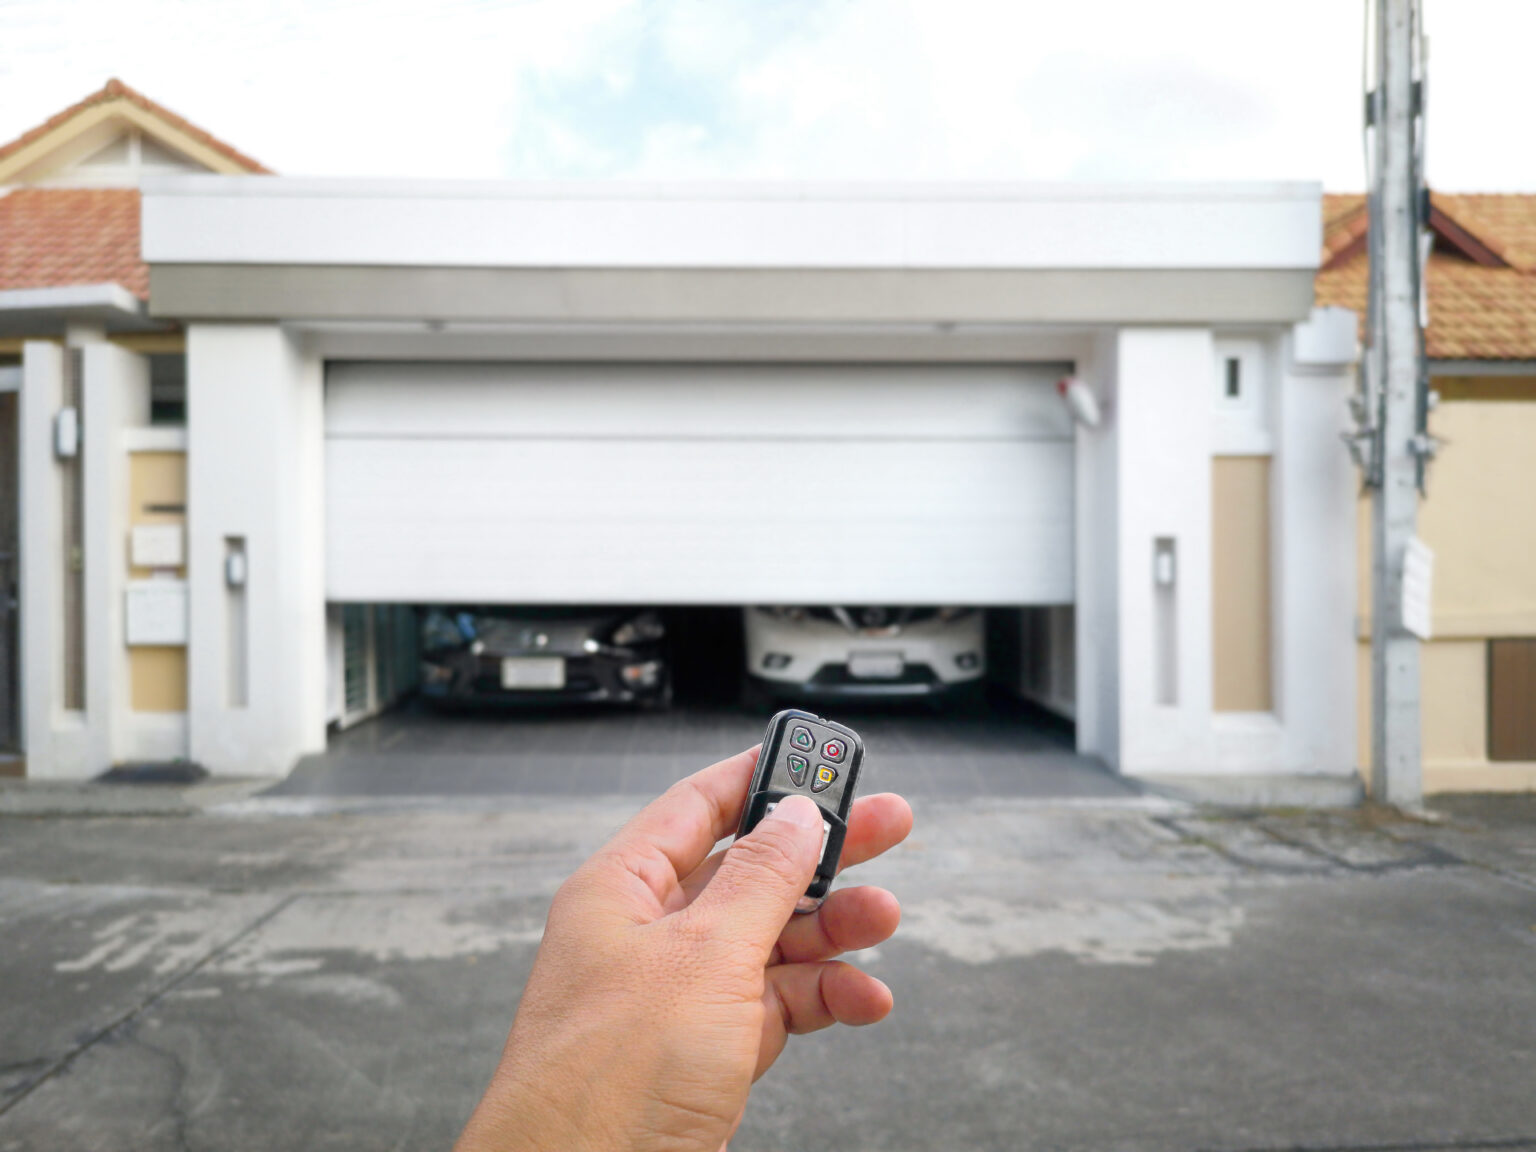 How to open garage door without power?